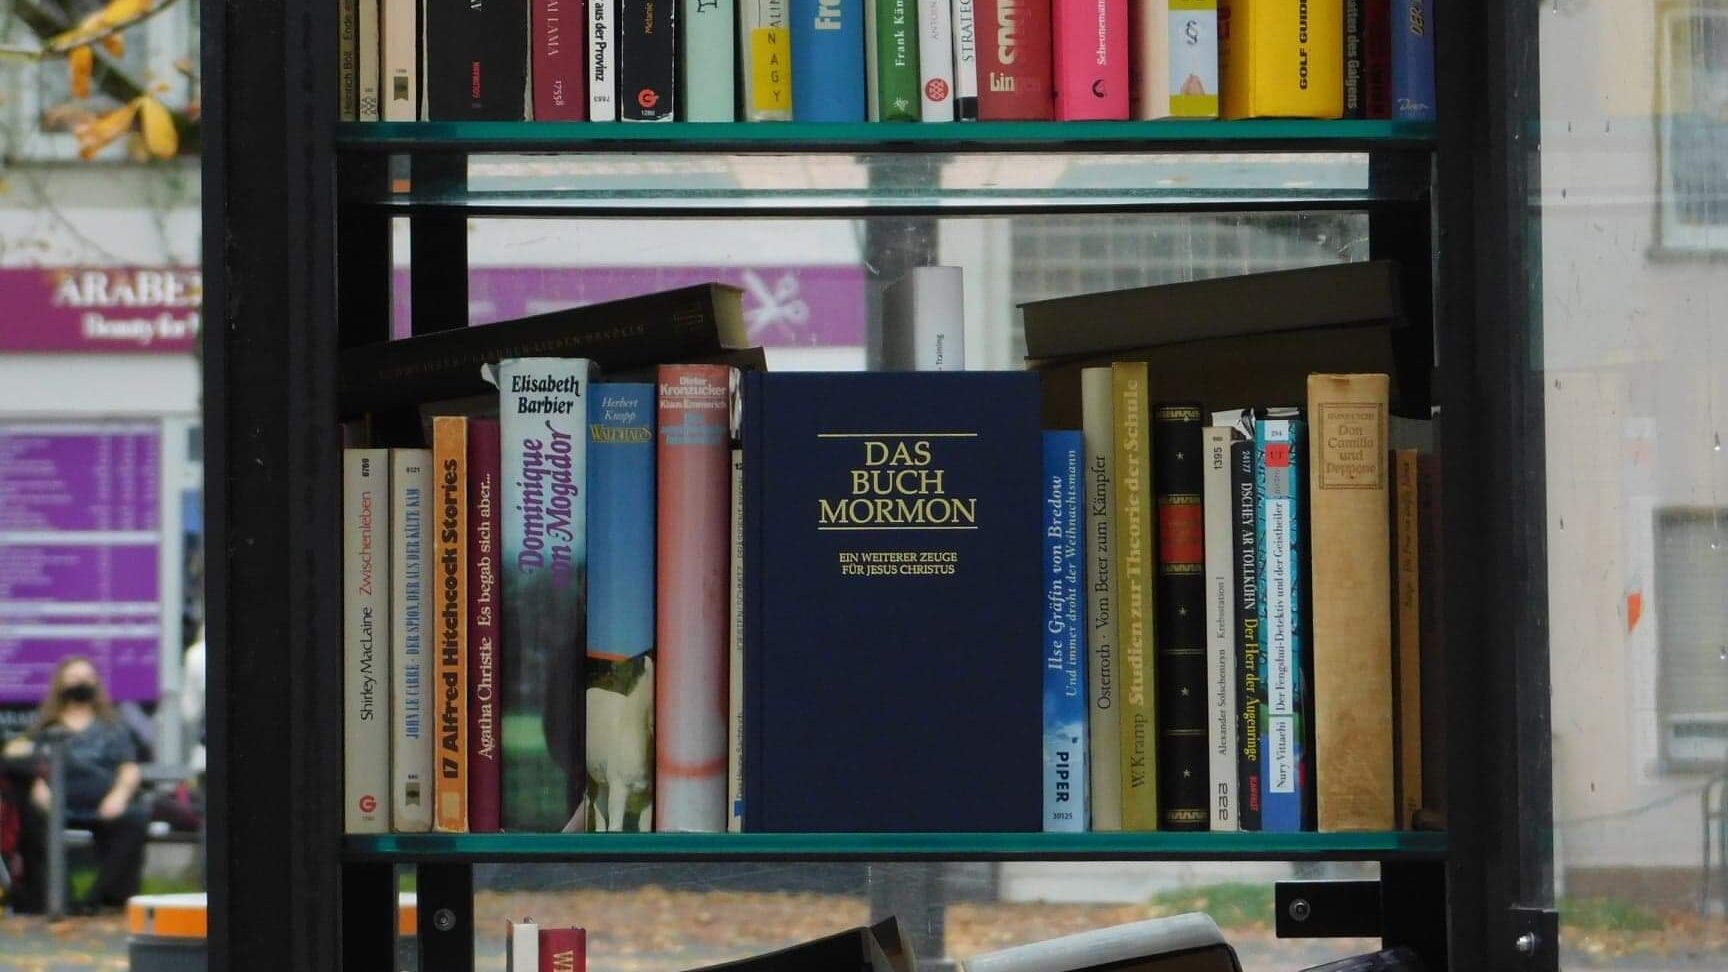 Übersetztes Buch von Joseph Smith im Bücherregal